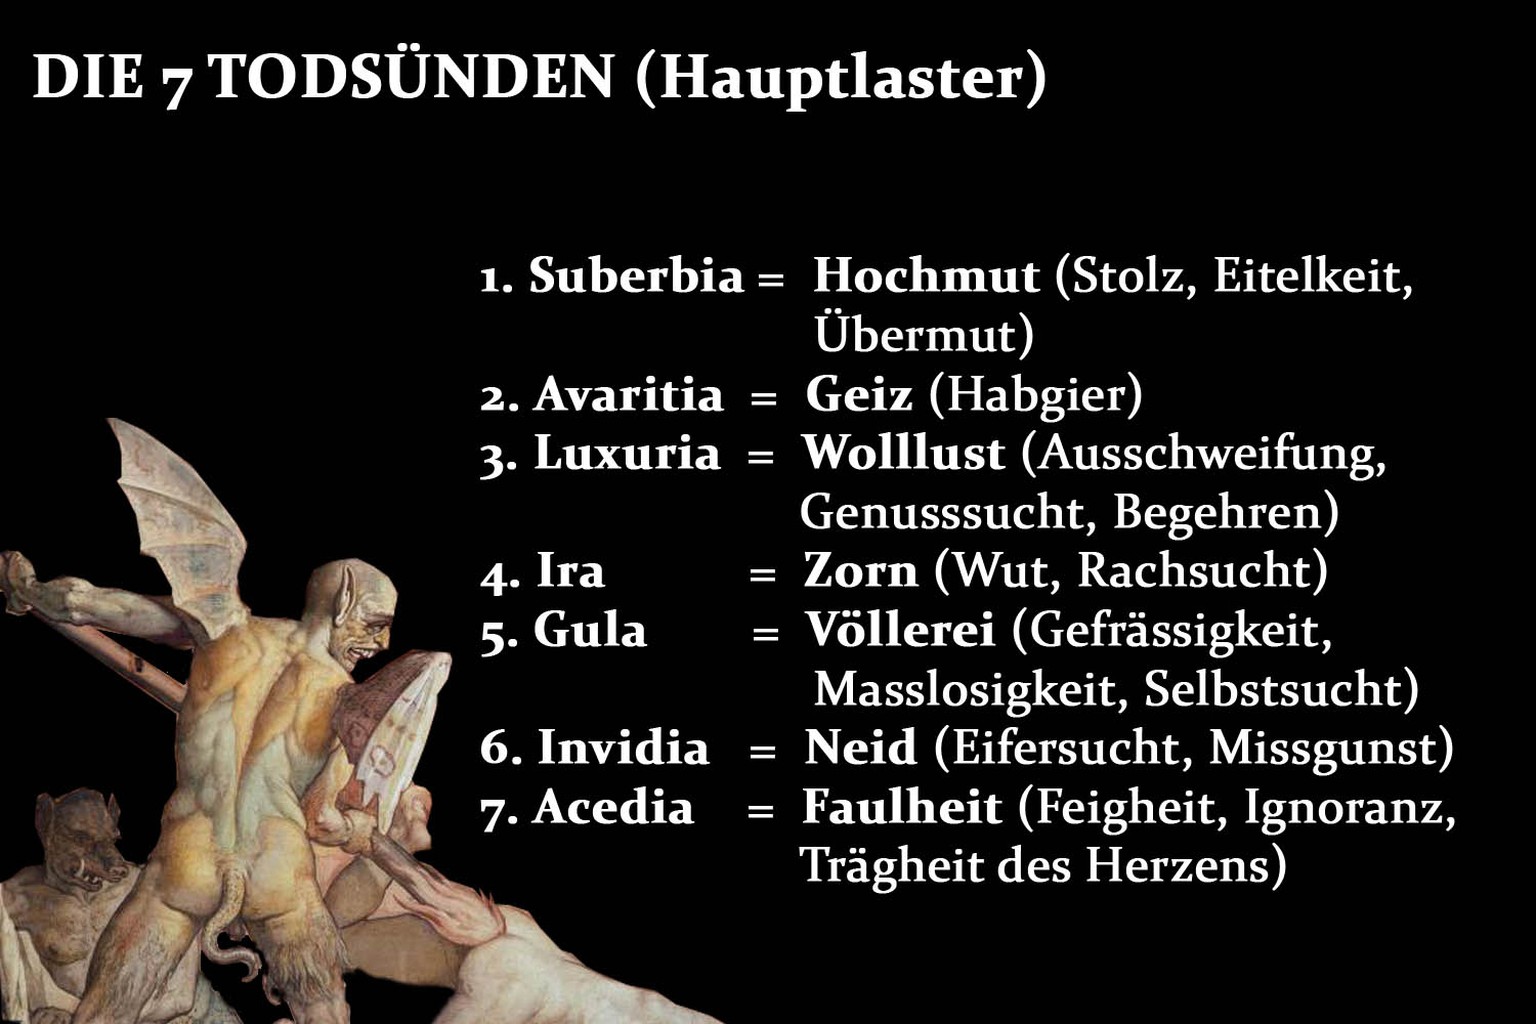 Die sieben Hauptlaster nach der klassischen Theologie.